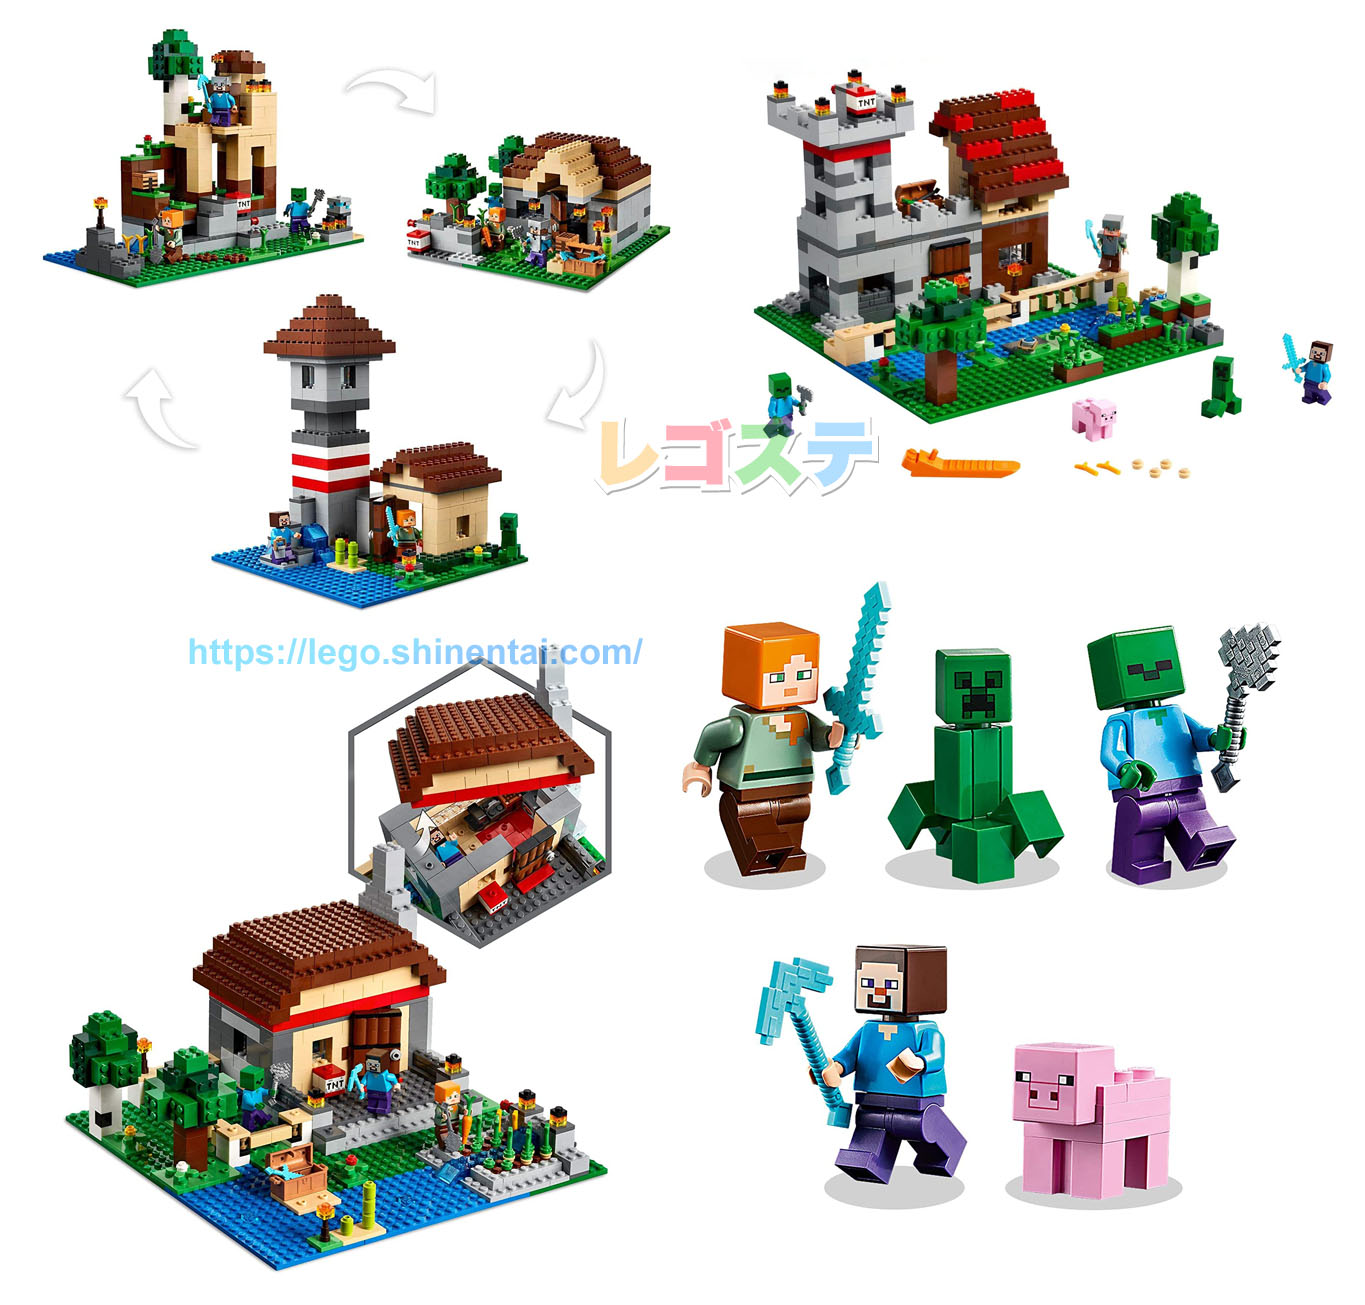 年春夏legoマインクラフト新製品公式画像公開 Amazonで予約受付中 人気ゲームシリーズ スタッズ レゴ Lego 総合ニュースメディア